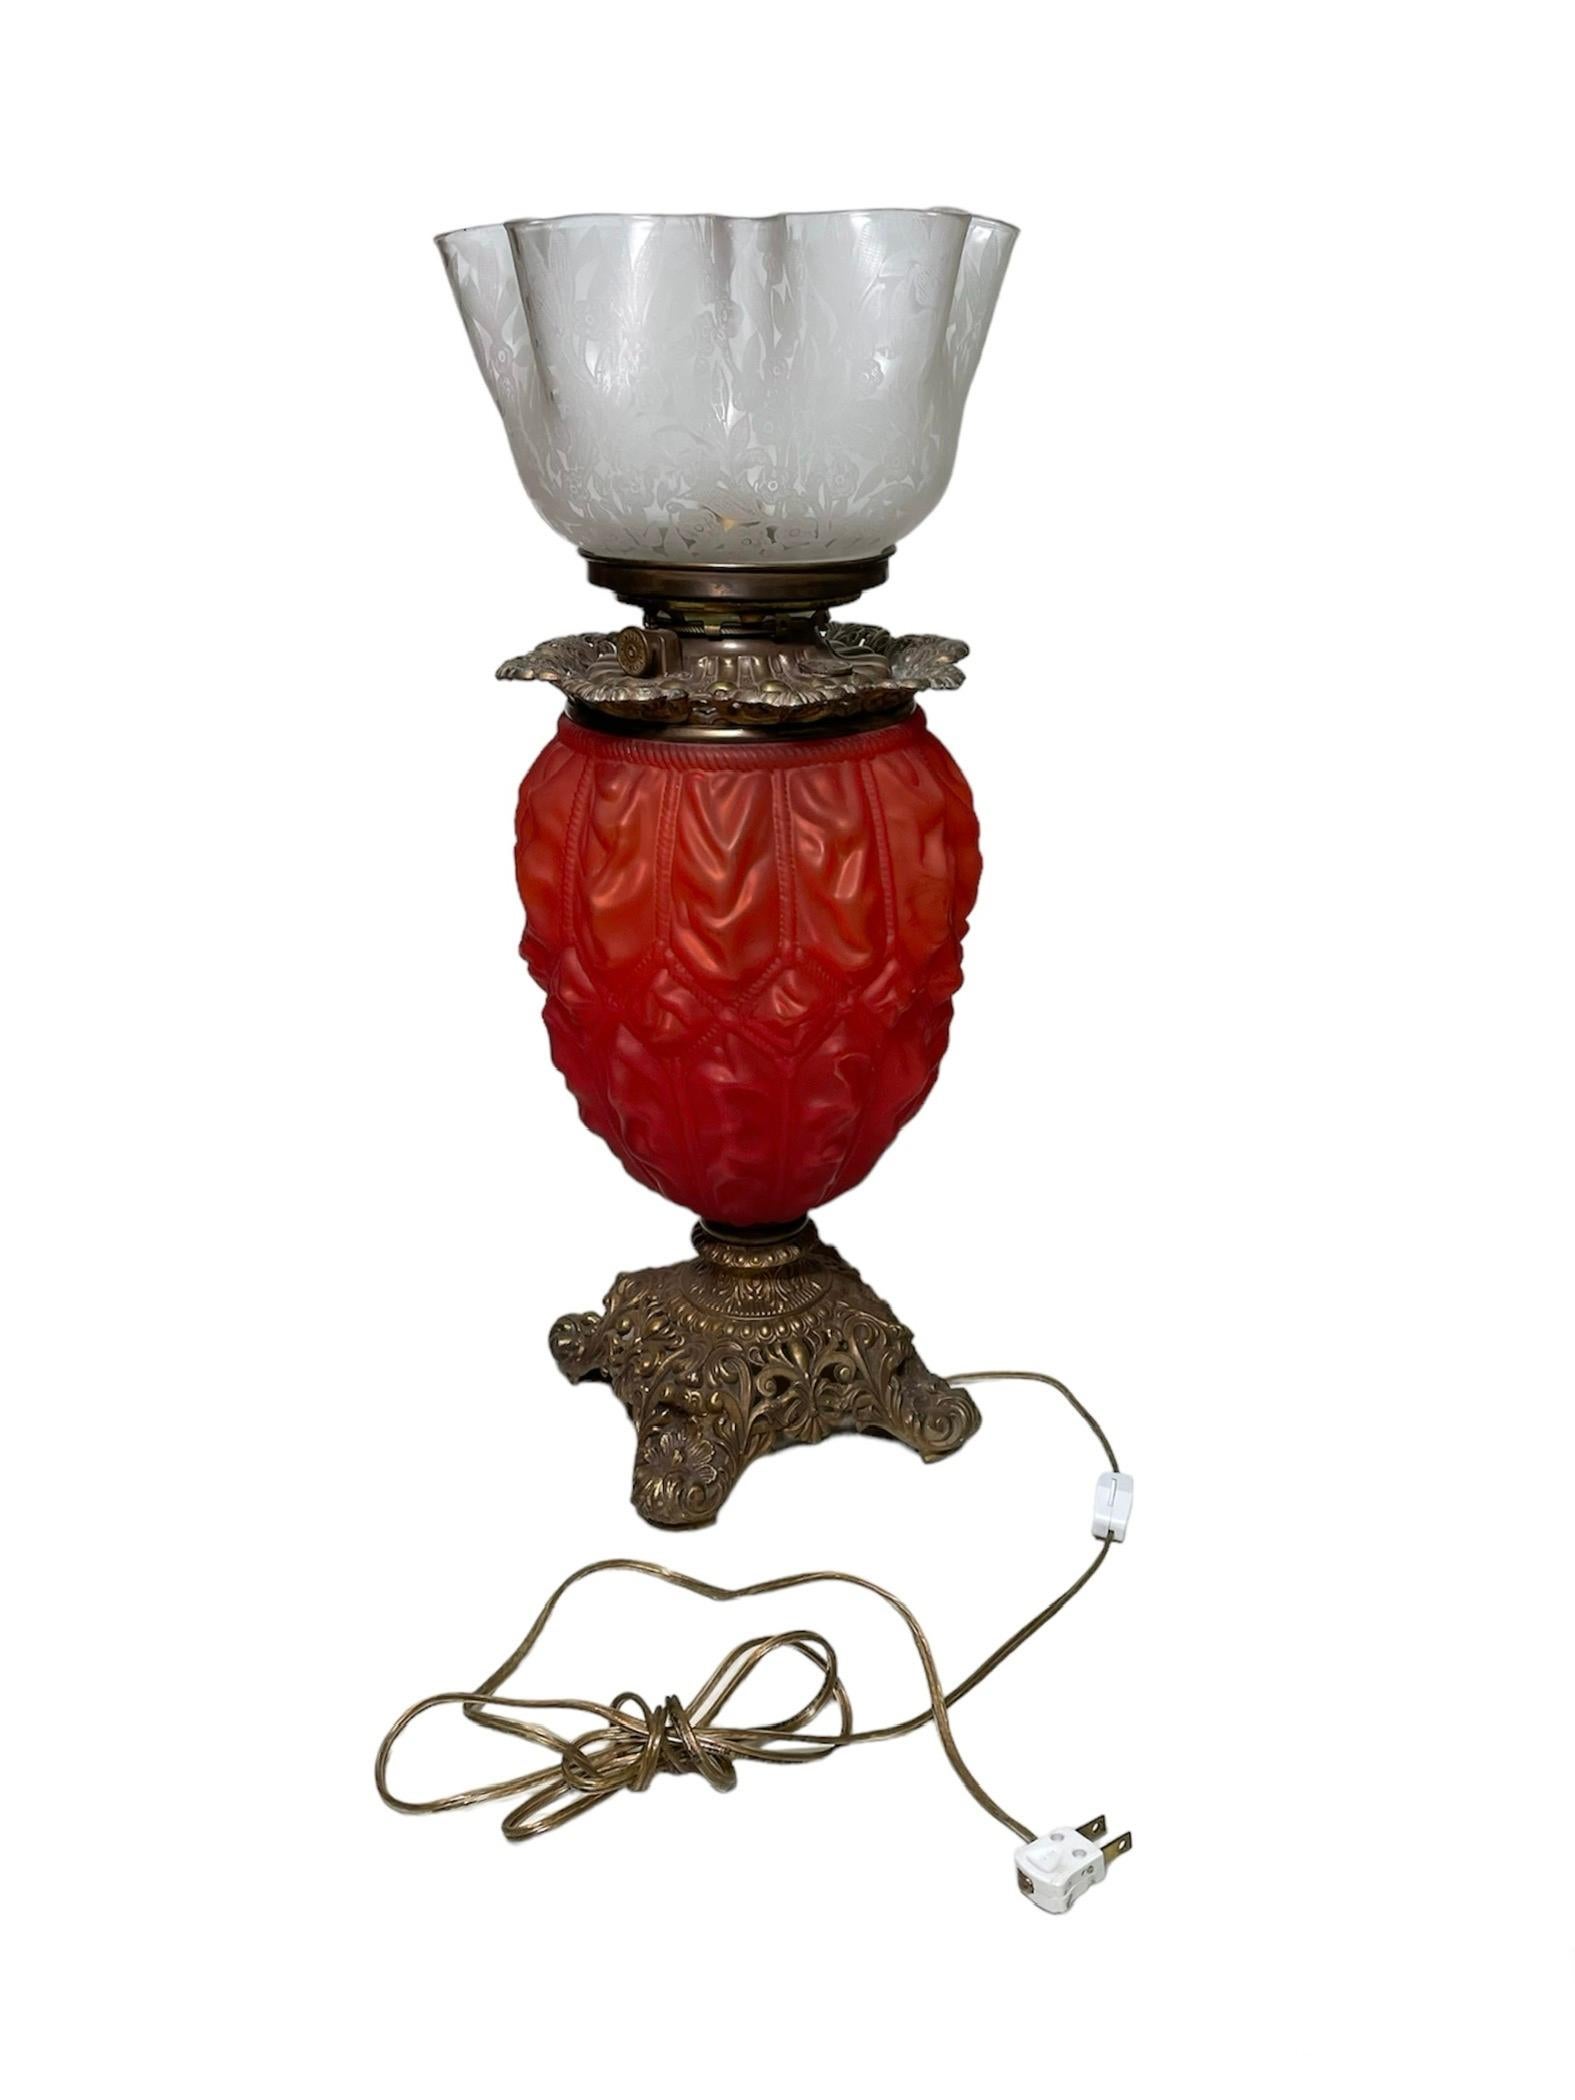 Dies ist eine viktorianische Tischlampe aus Messing und Glas. Sie zeigt eine Lampe mit einem großen, rot gefärbten, gewölbten und mit Seilen verzierten Glaskörper, der von einem quadratischen Messingfuß mit vier Füßen getragen wird. Der Sockel ist